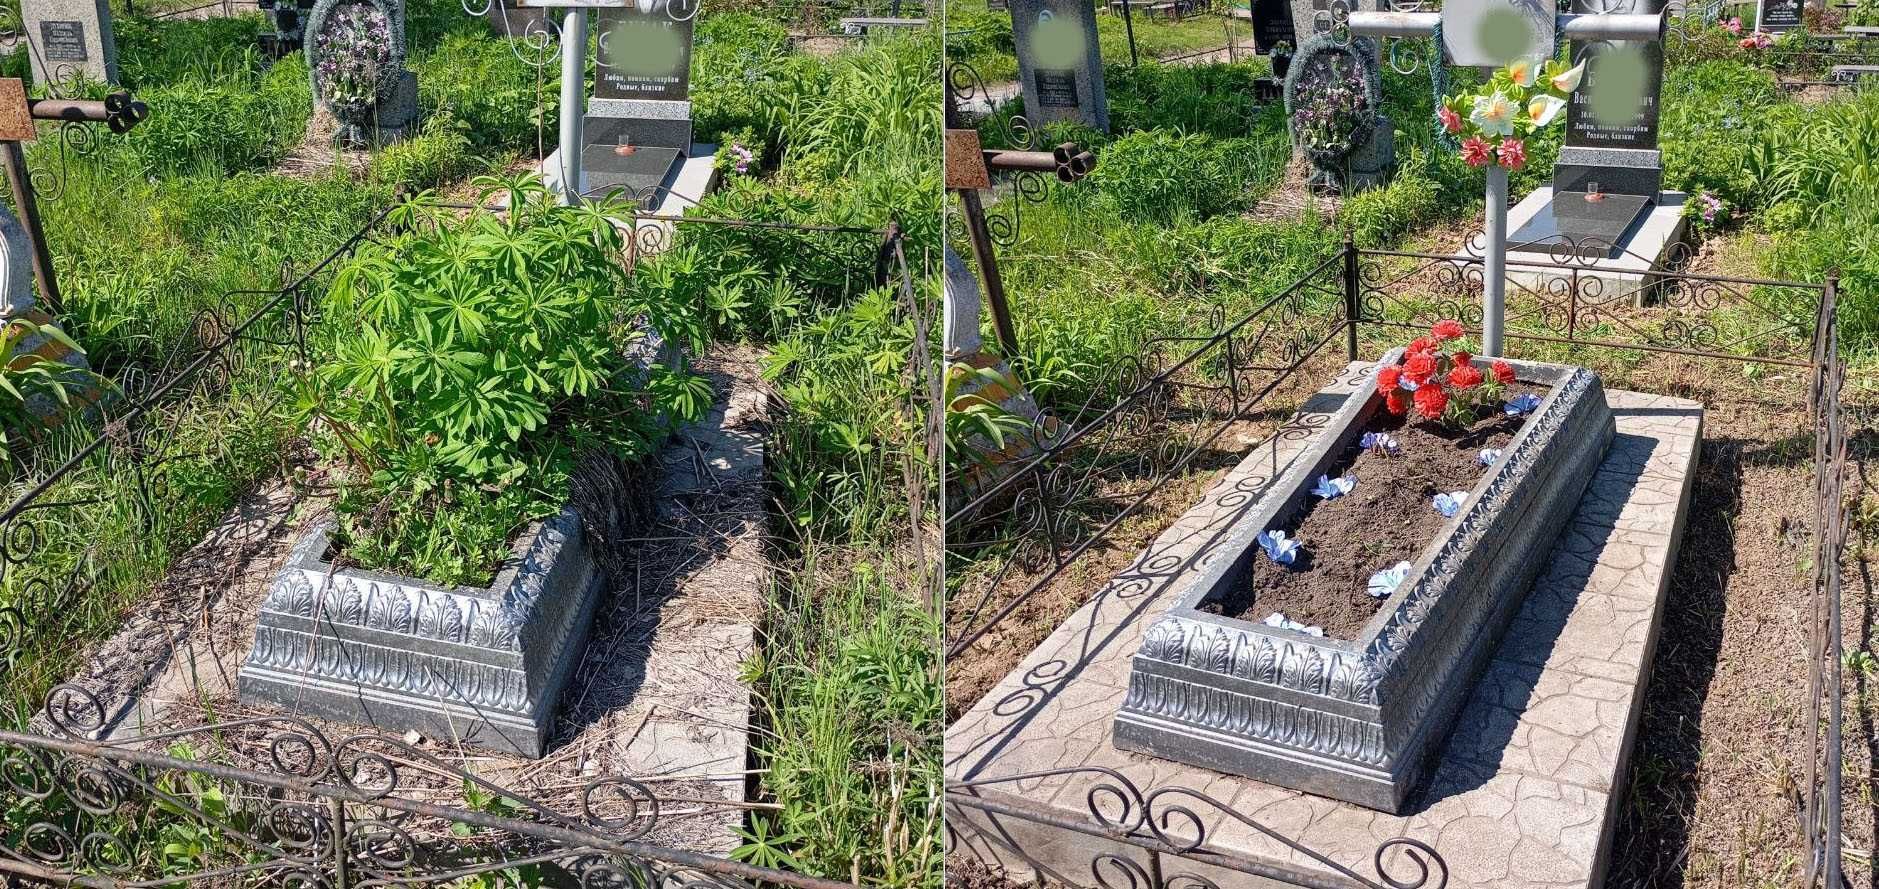 Догляд та прибирання могили на кладовищі. Найкращий сервіс в місті